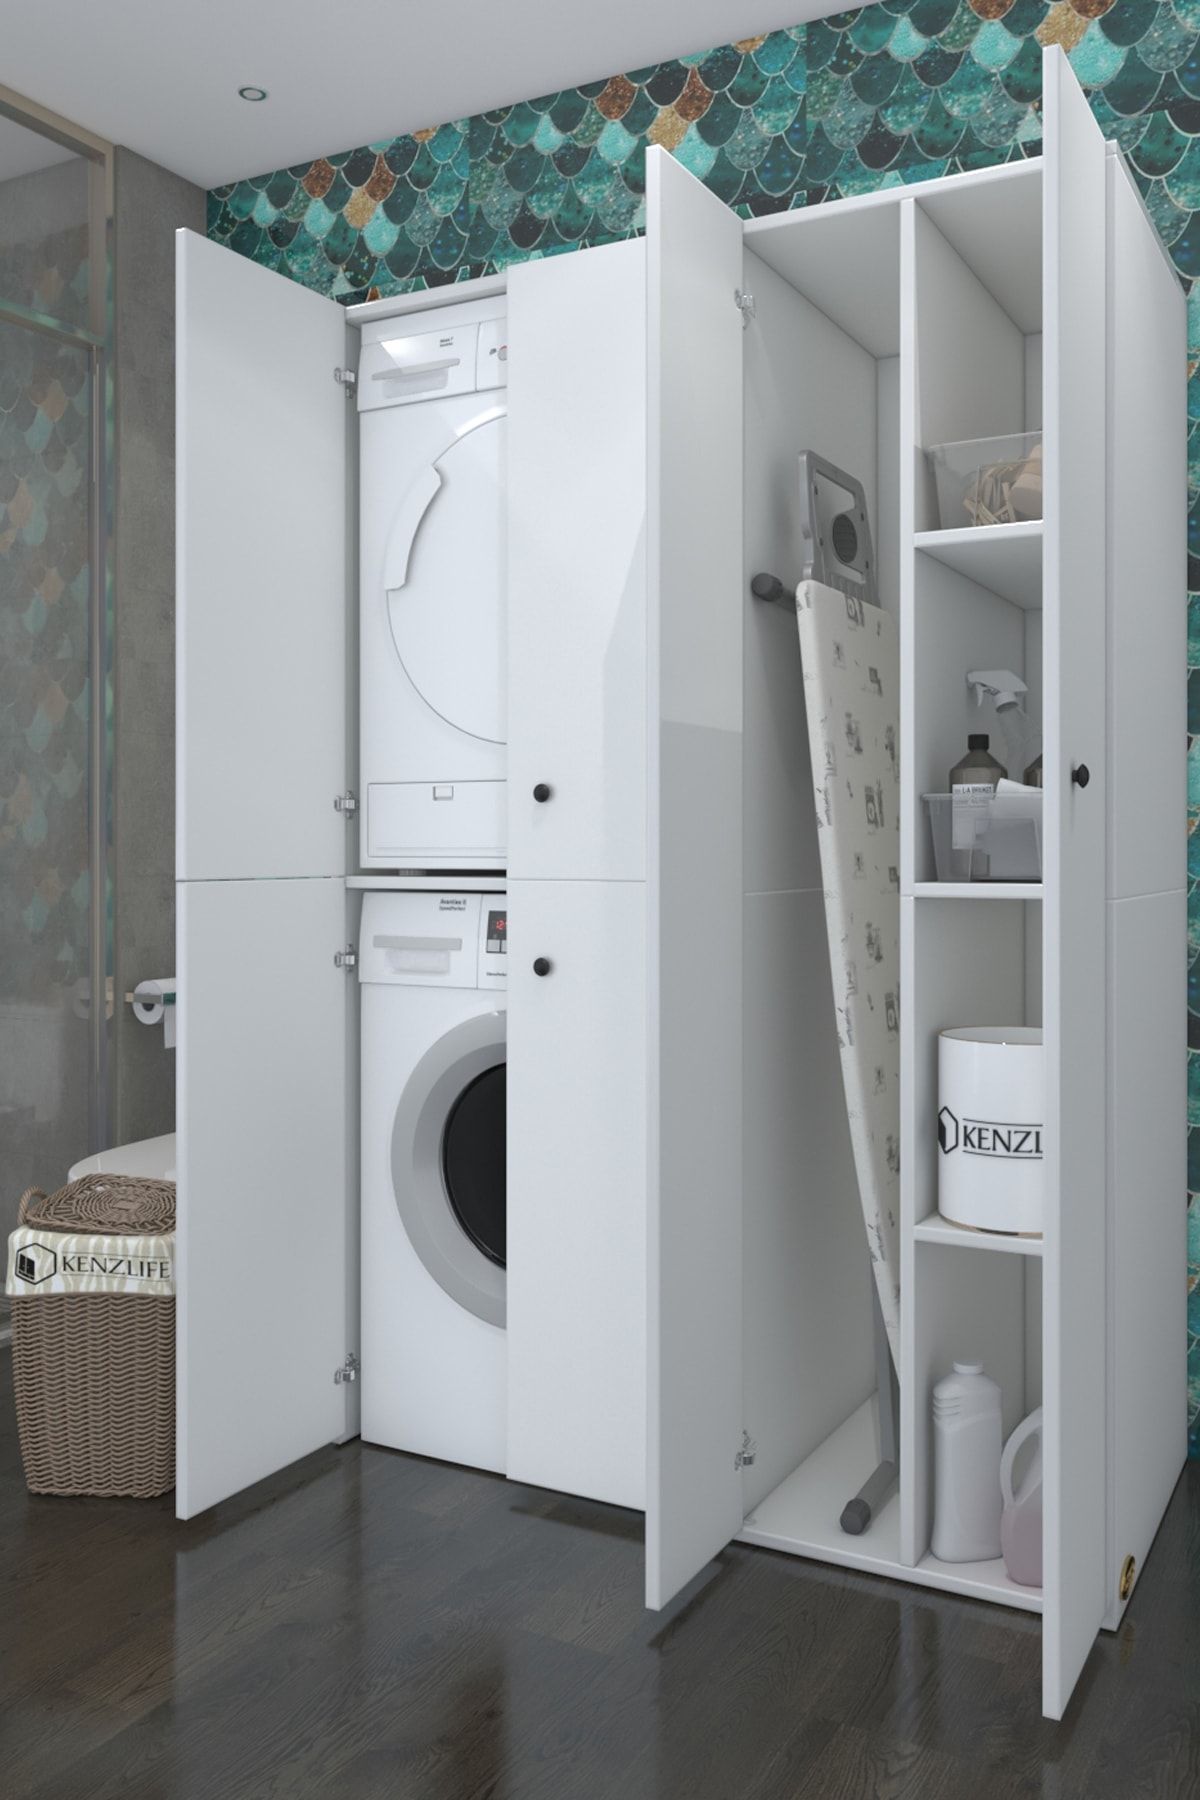 Kenzlife Çamaşır kurutma makinesi dolabı kapaklı Yaromira Byz 180*120*60 Banyo